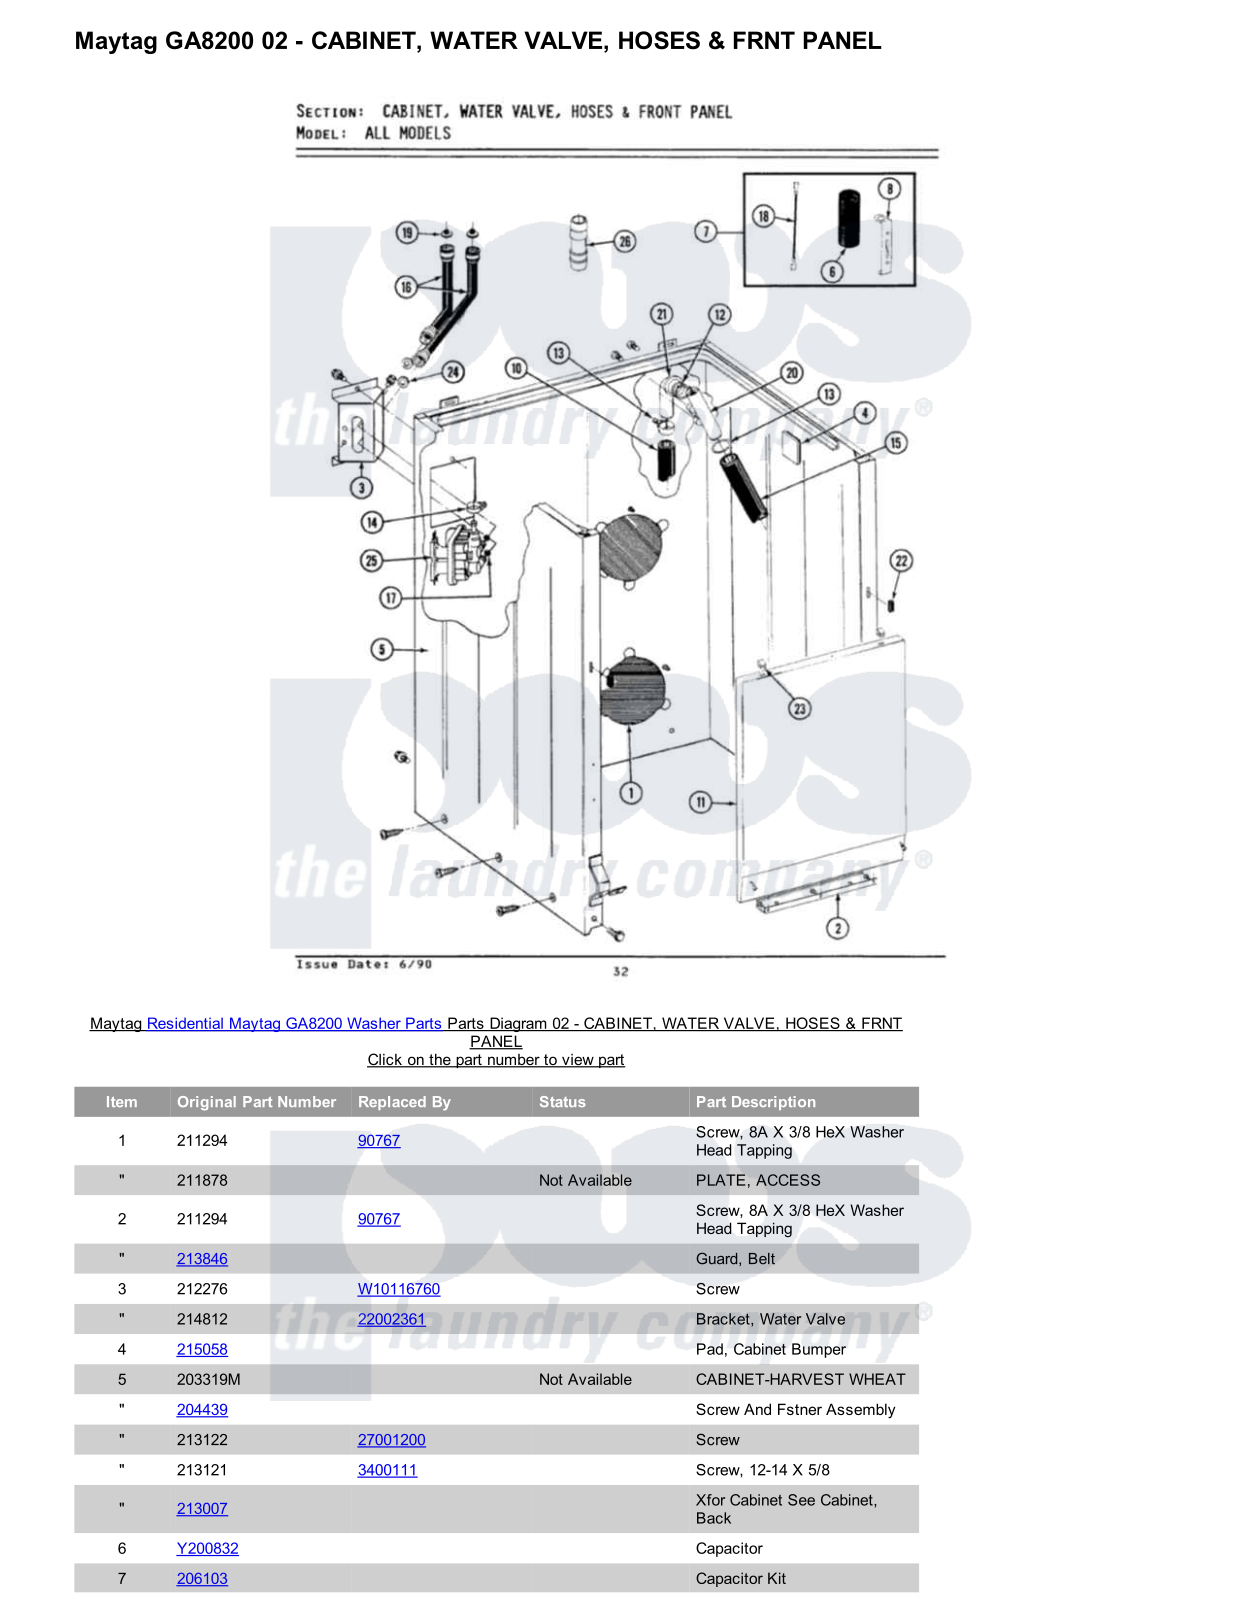 Maytag GA8200 Parts Diagram